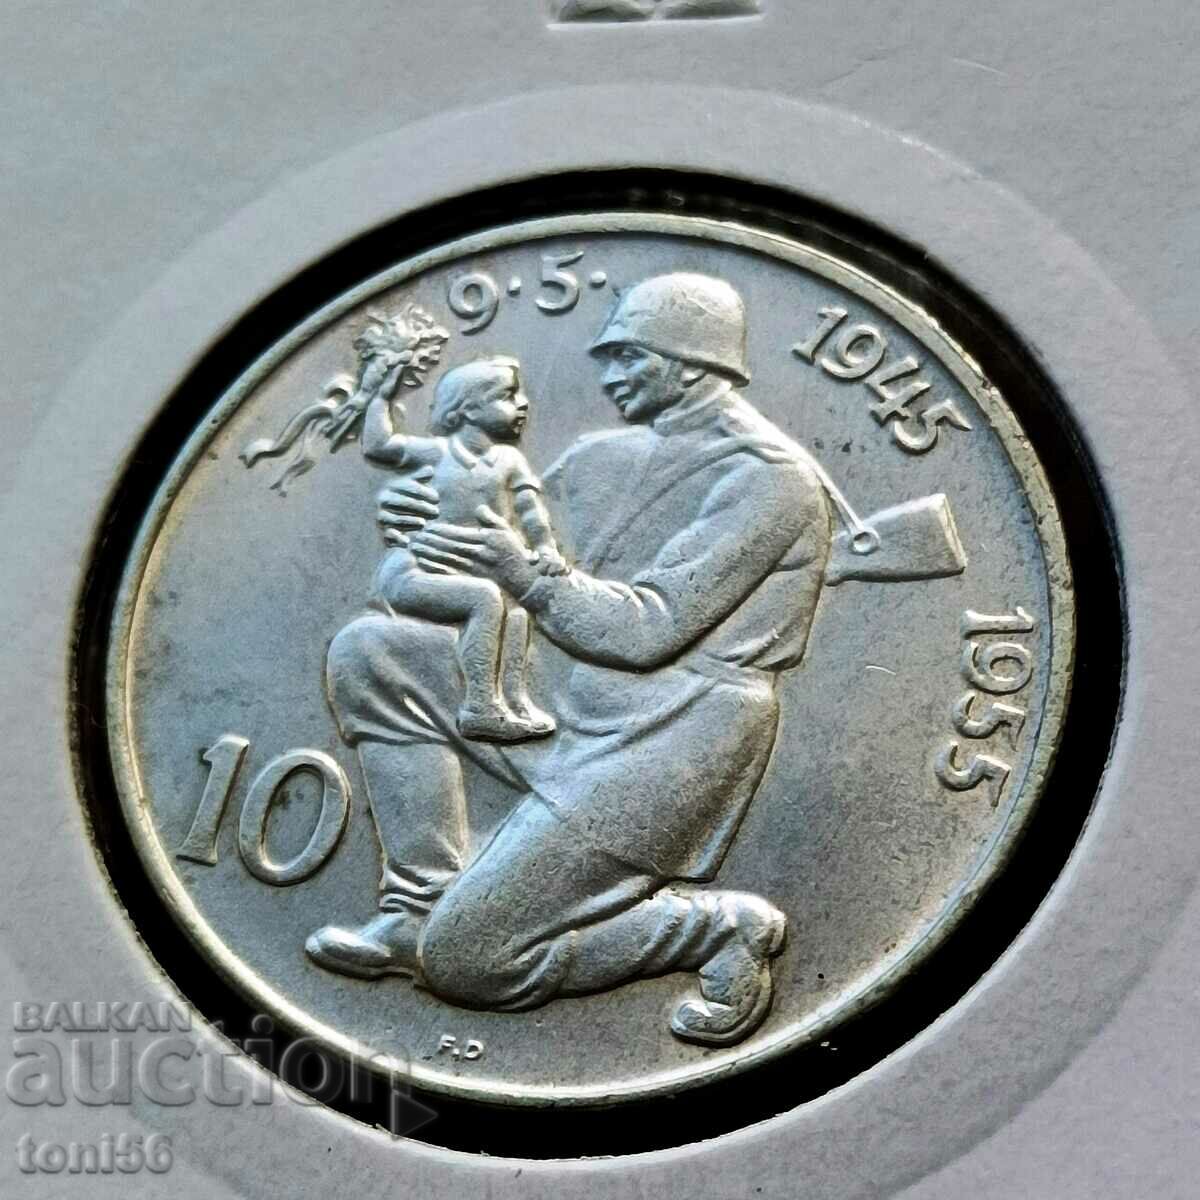 Czechoslovakia 10 kroner 1955 UNC - Silver